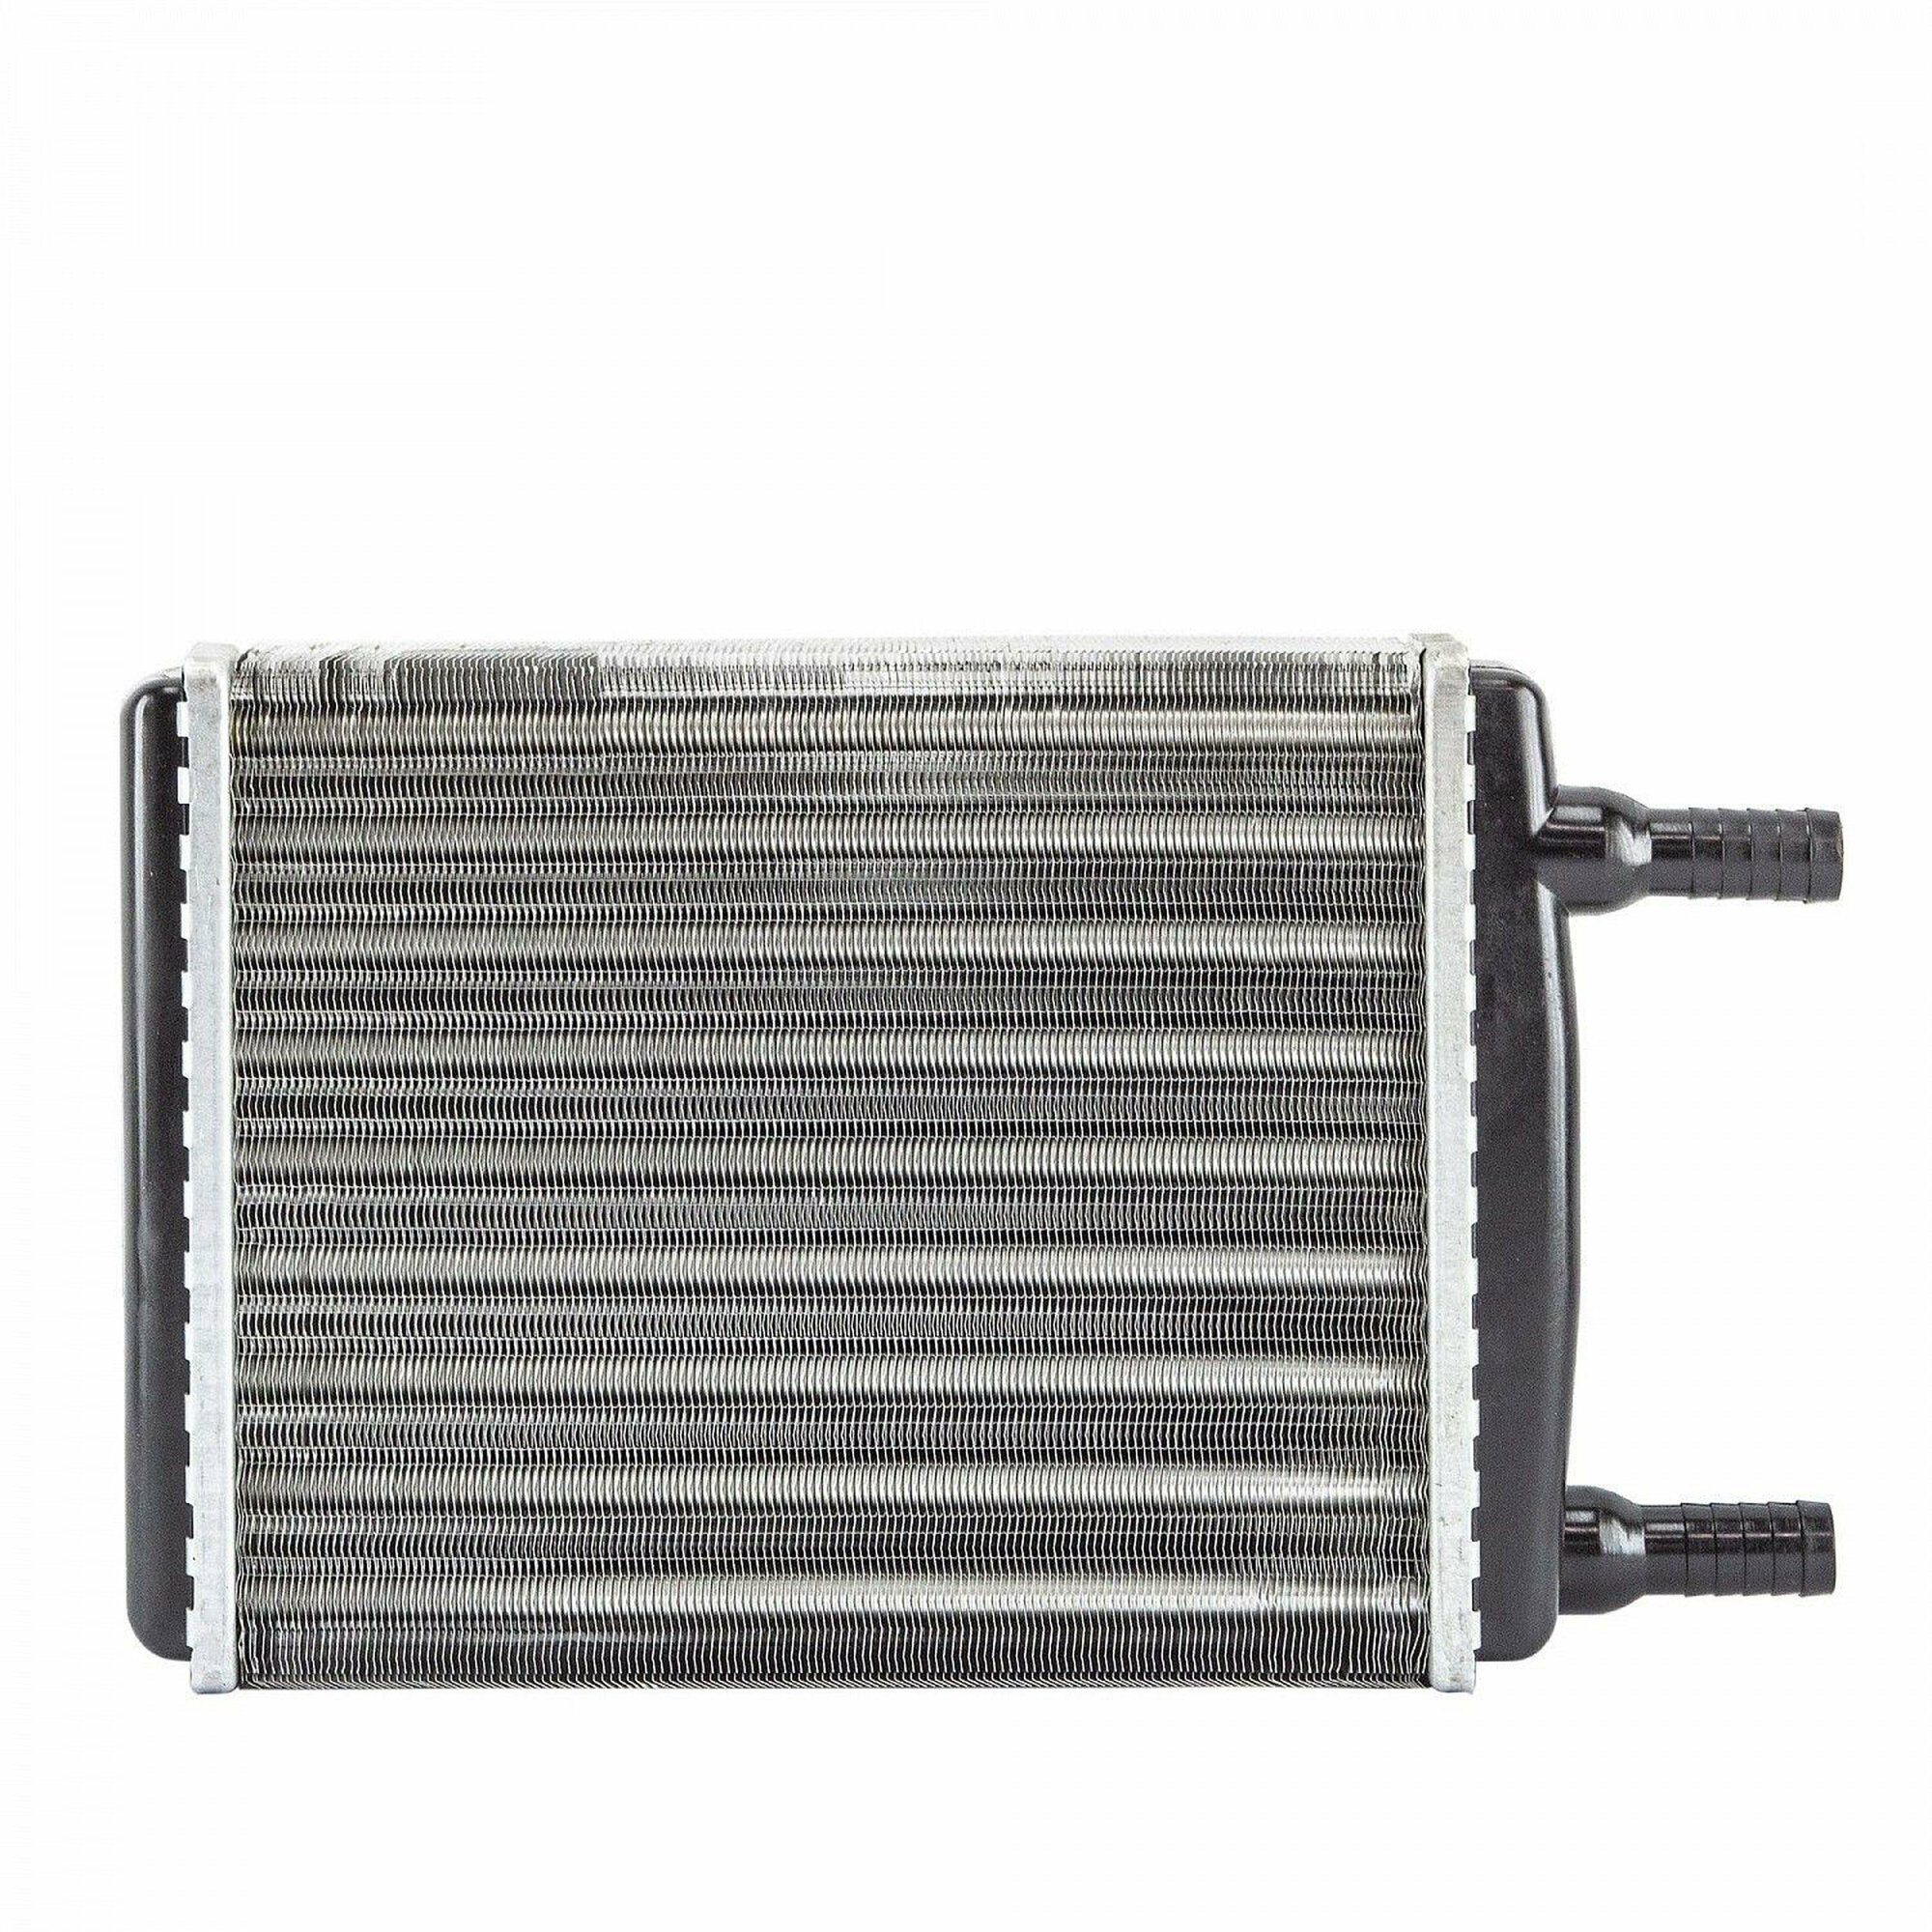 Радиатор отопителя (2х-рядный) алюминиевый с пласт. бачками Г-3302, 2705, 2217, 2752, Г-3221 до 2003